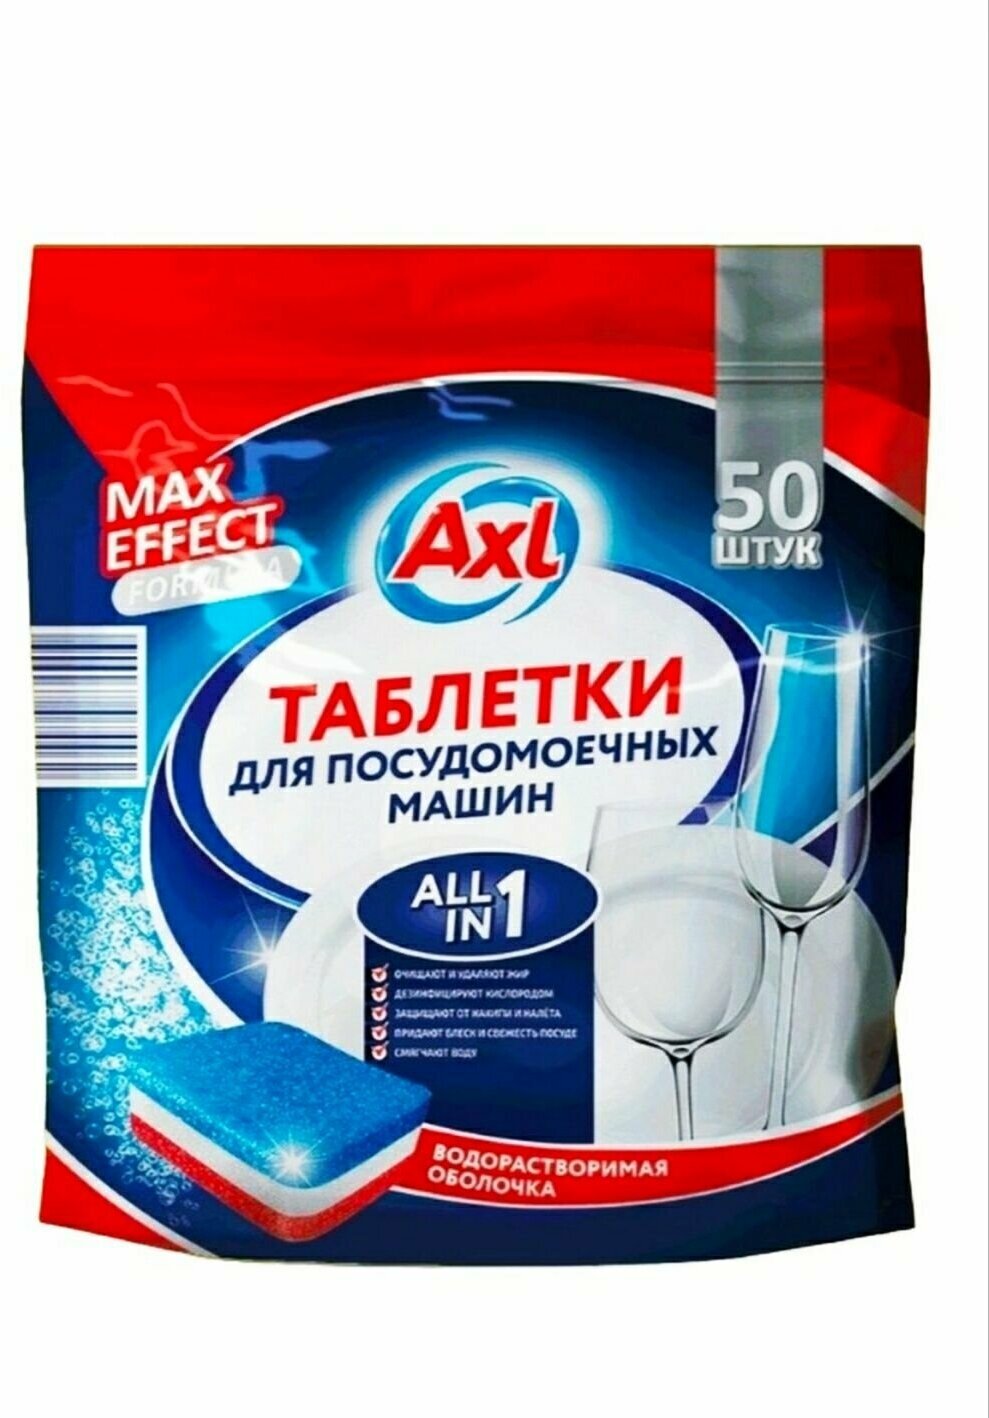 Таблетки для посудомоечной машины AXL/с антибактериальным эффектом 50 шт.